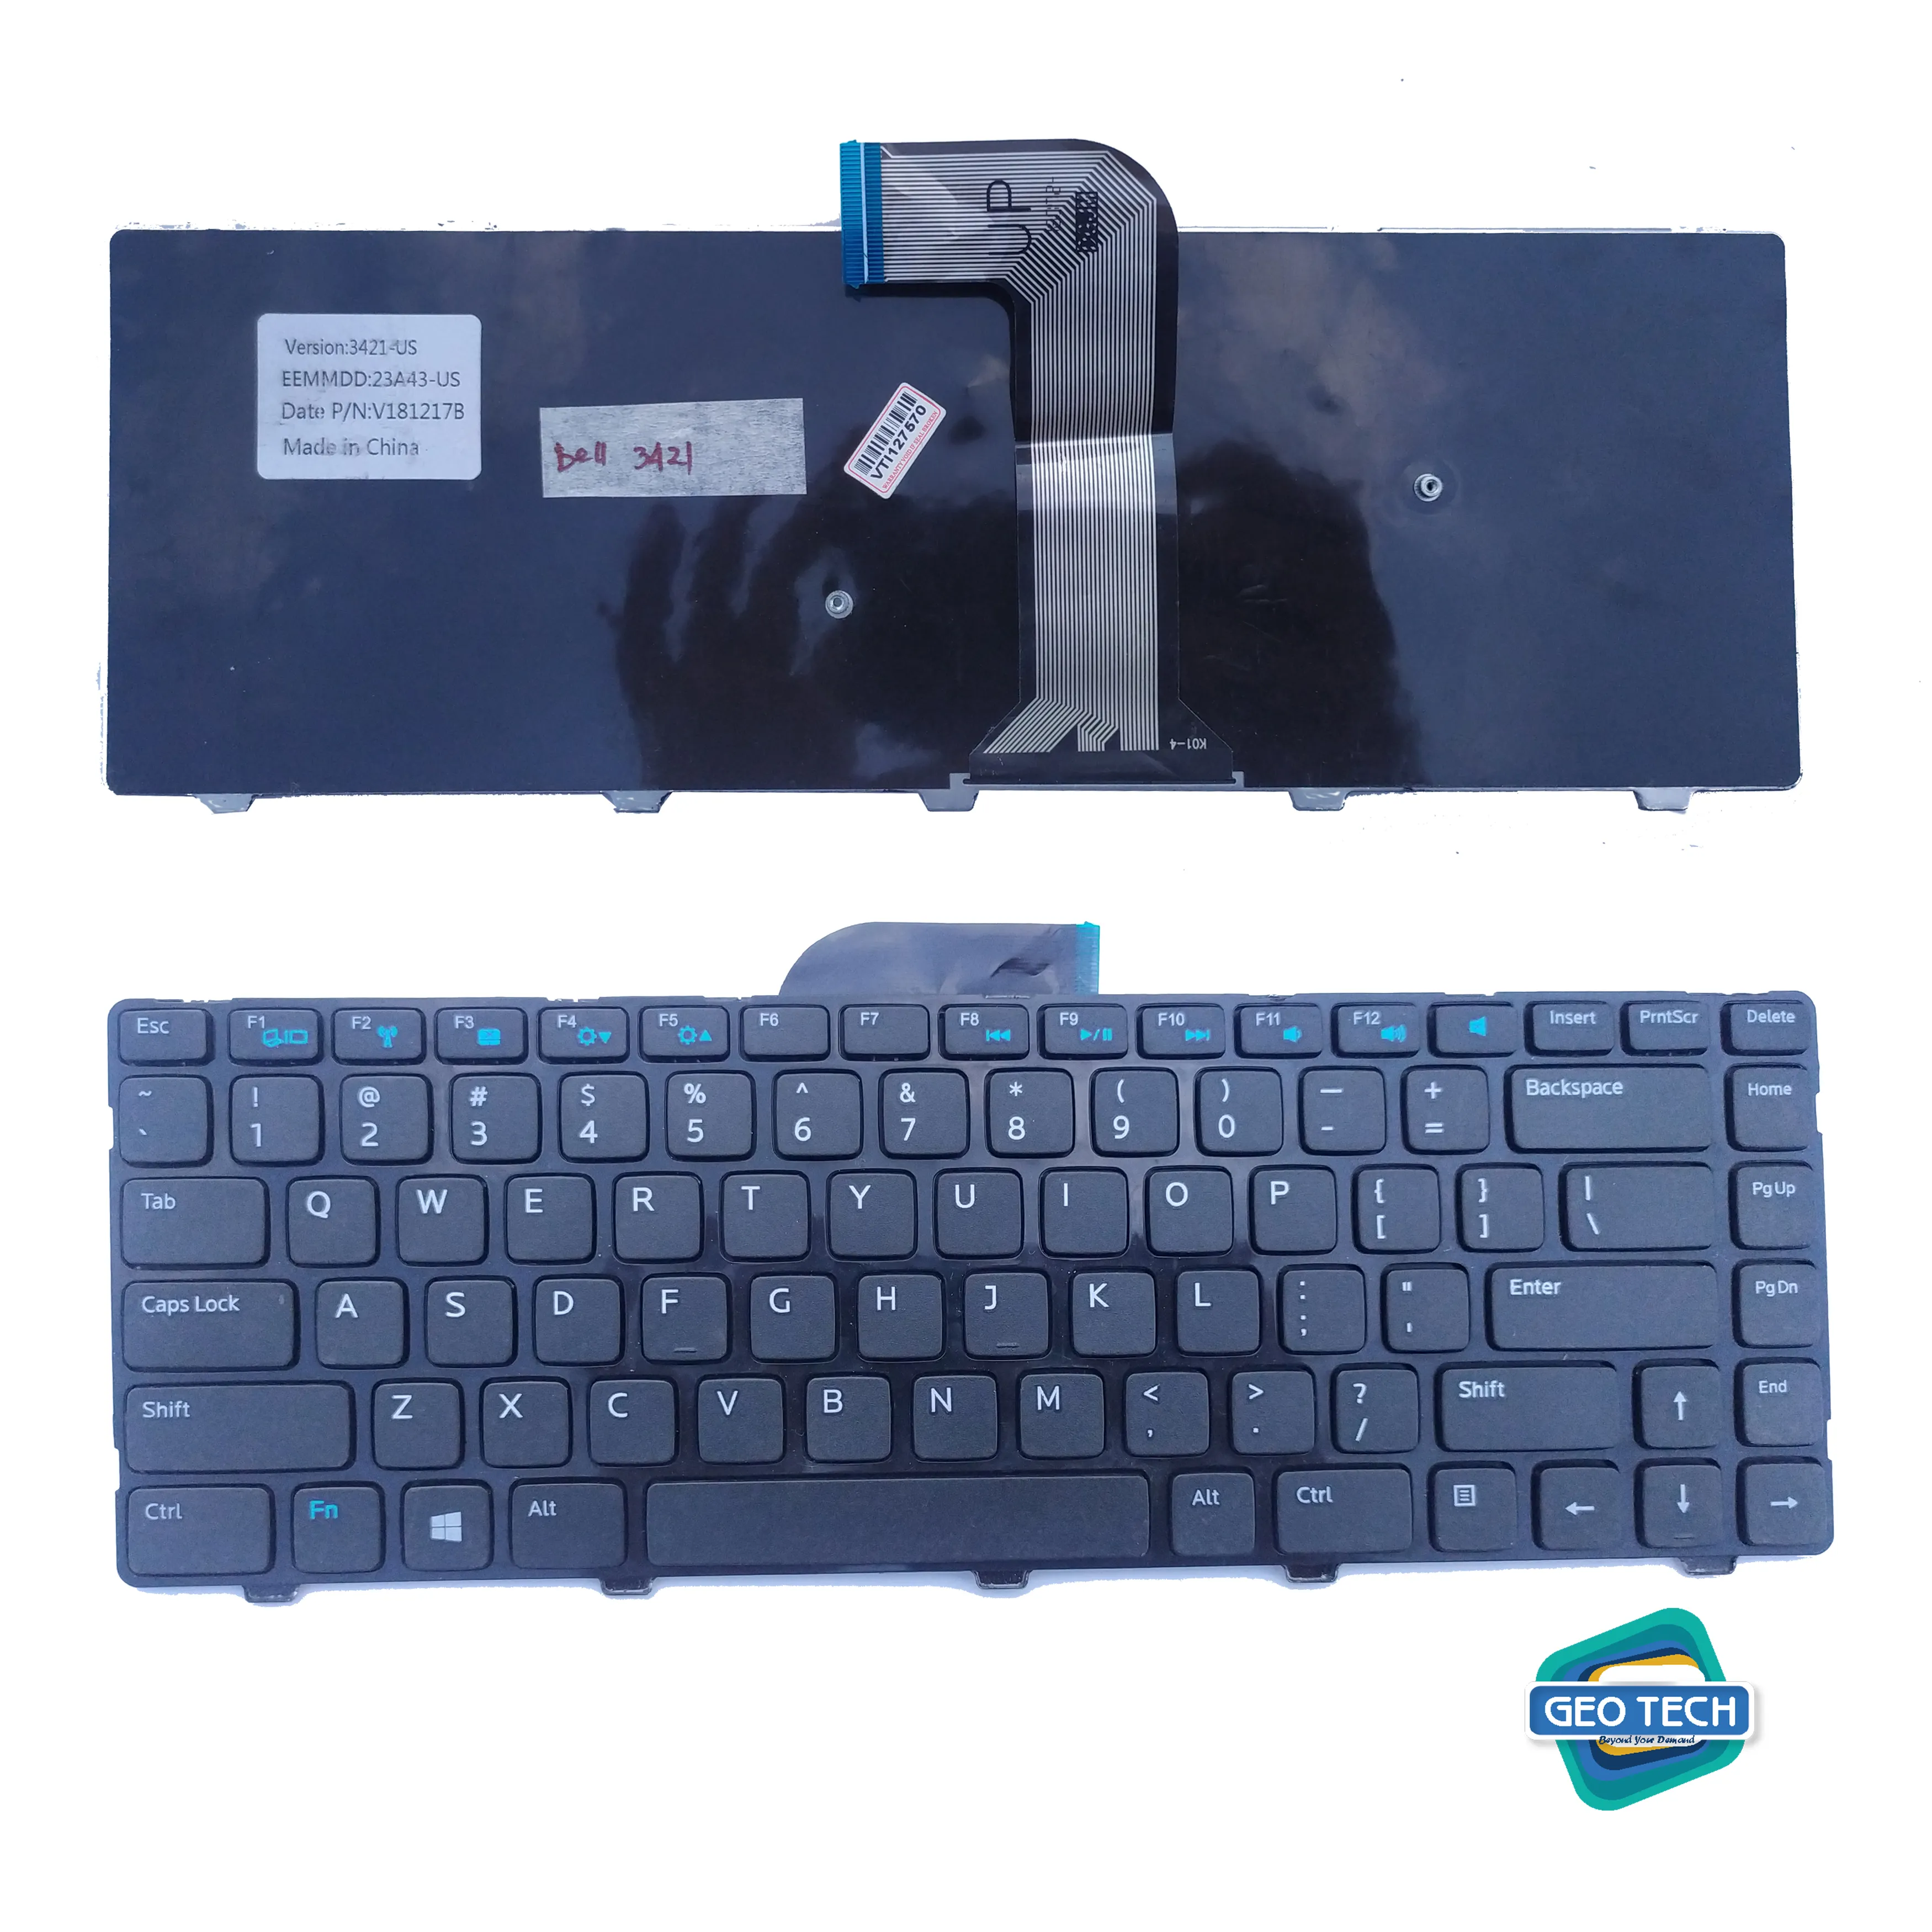 DELL 3421 laptop keyboard